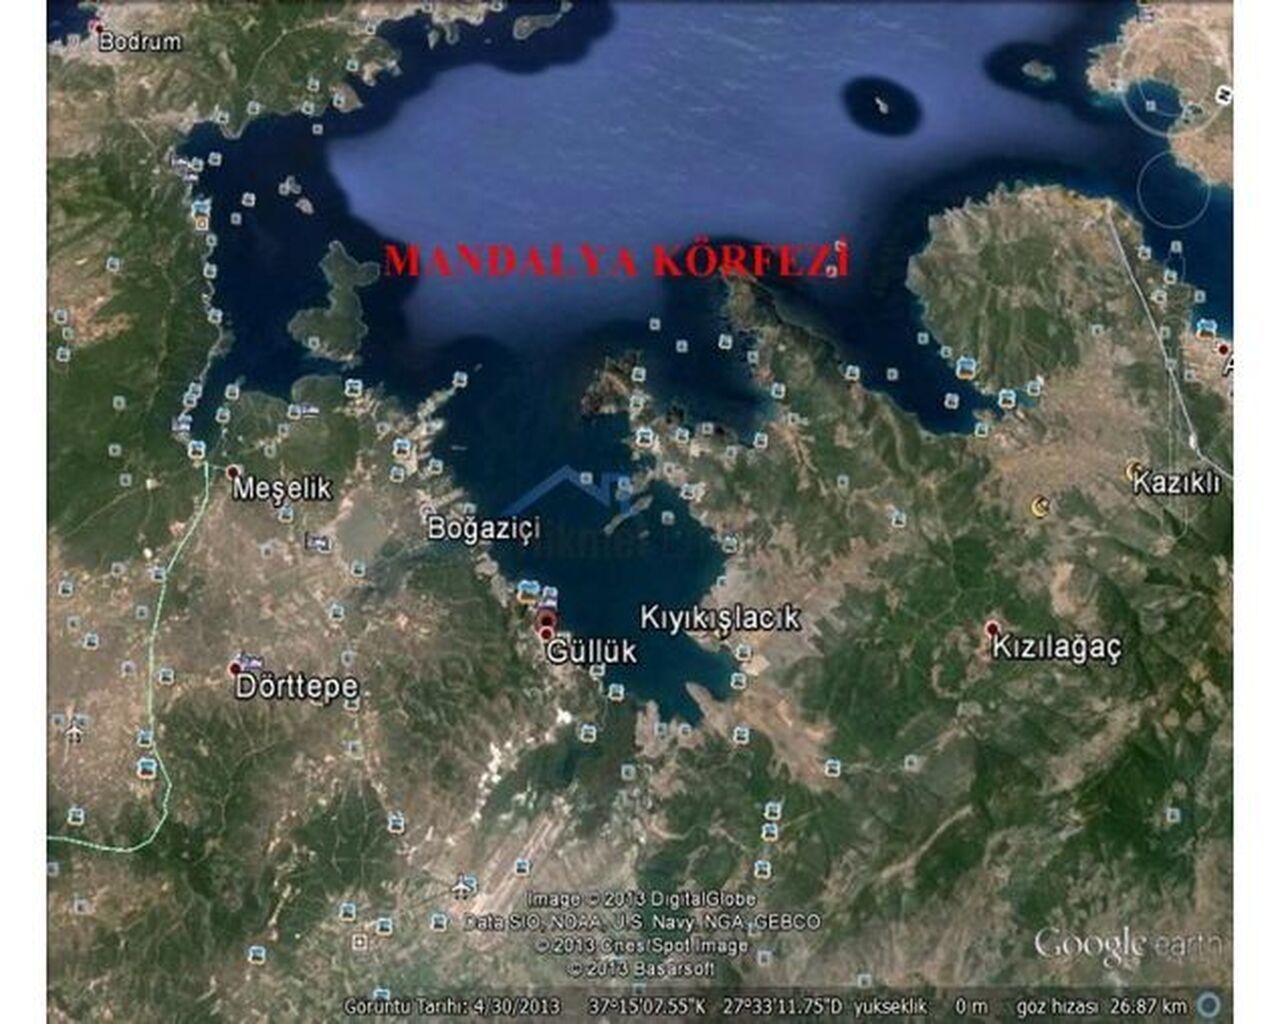 Propiedad comercial en Bodrum, Turquia, 890 000 m2 - imagen 1